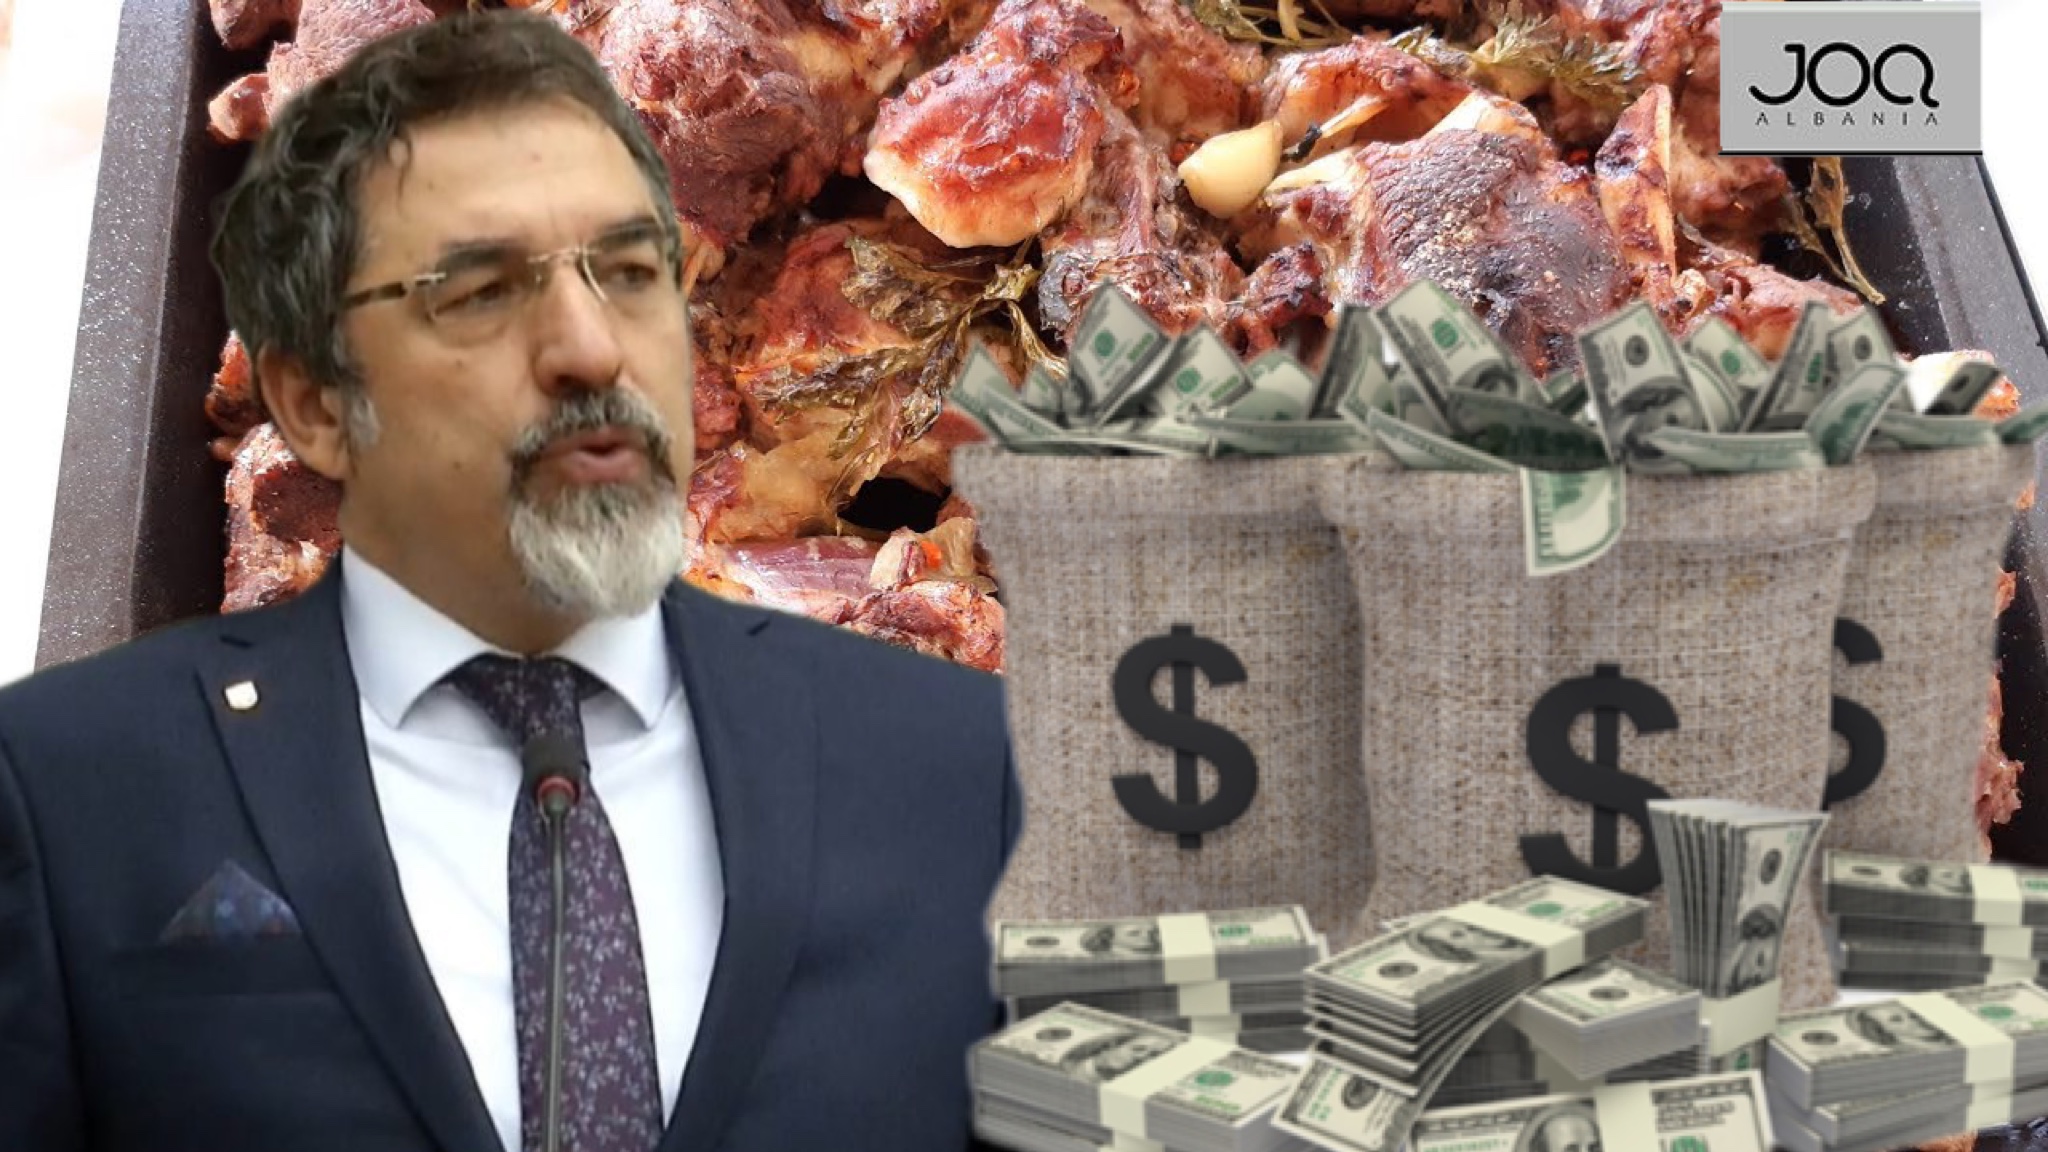 Shqiptarët s’po blejnë dot as bukë, drejtoresha e Çuçit ble 2.4 MLD Lekë mish tek Olta Sharra